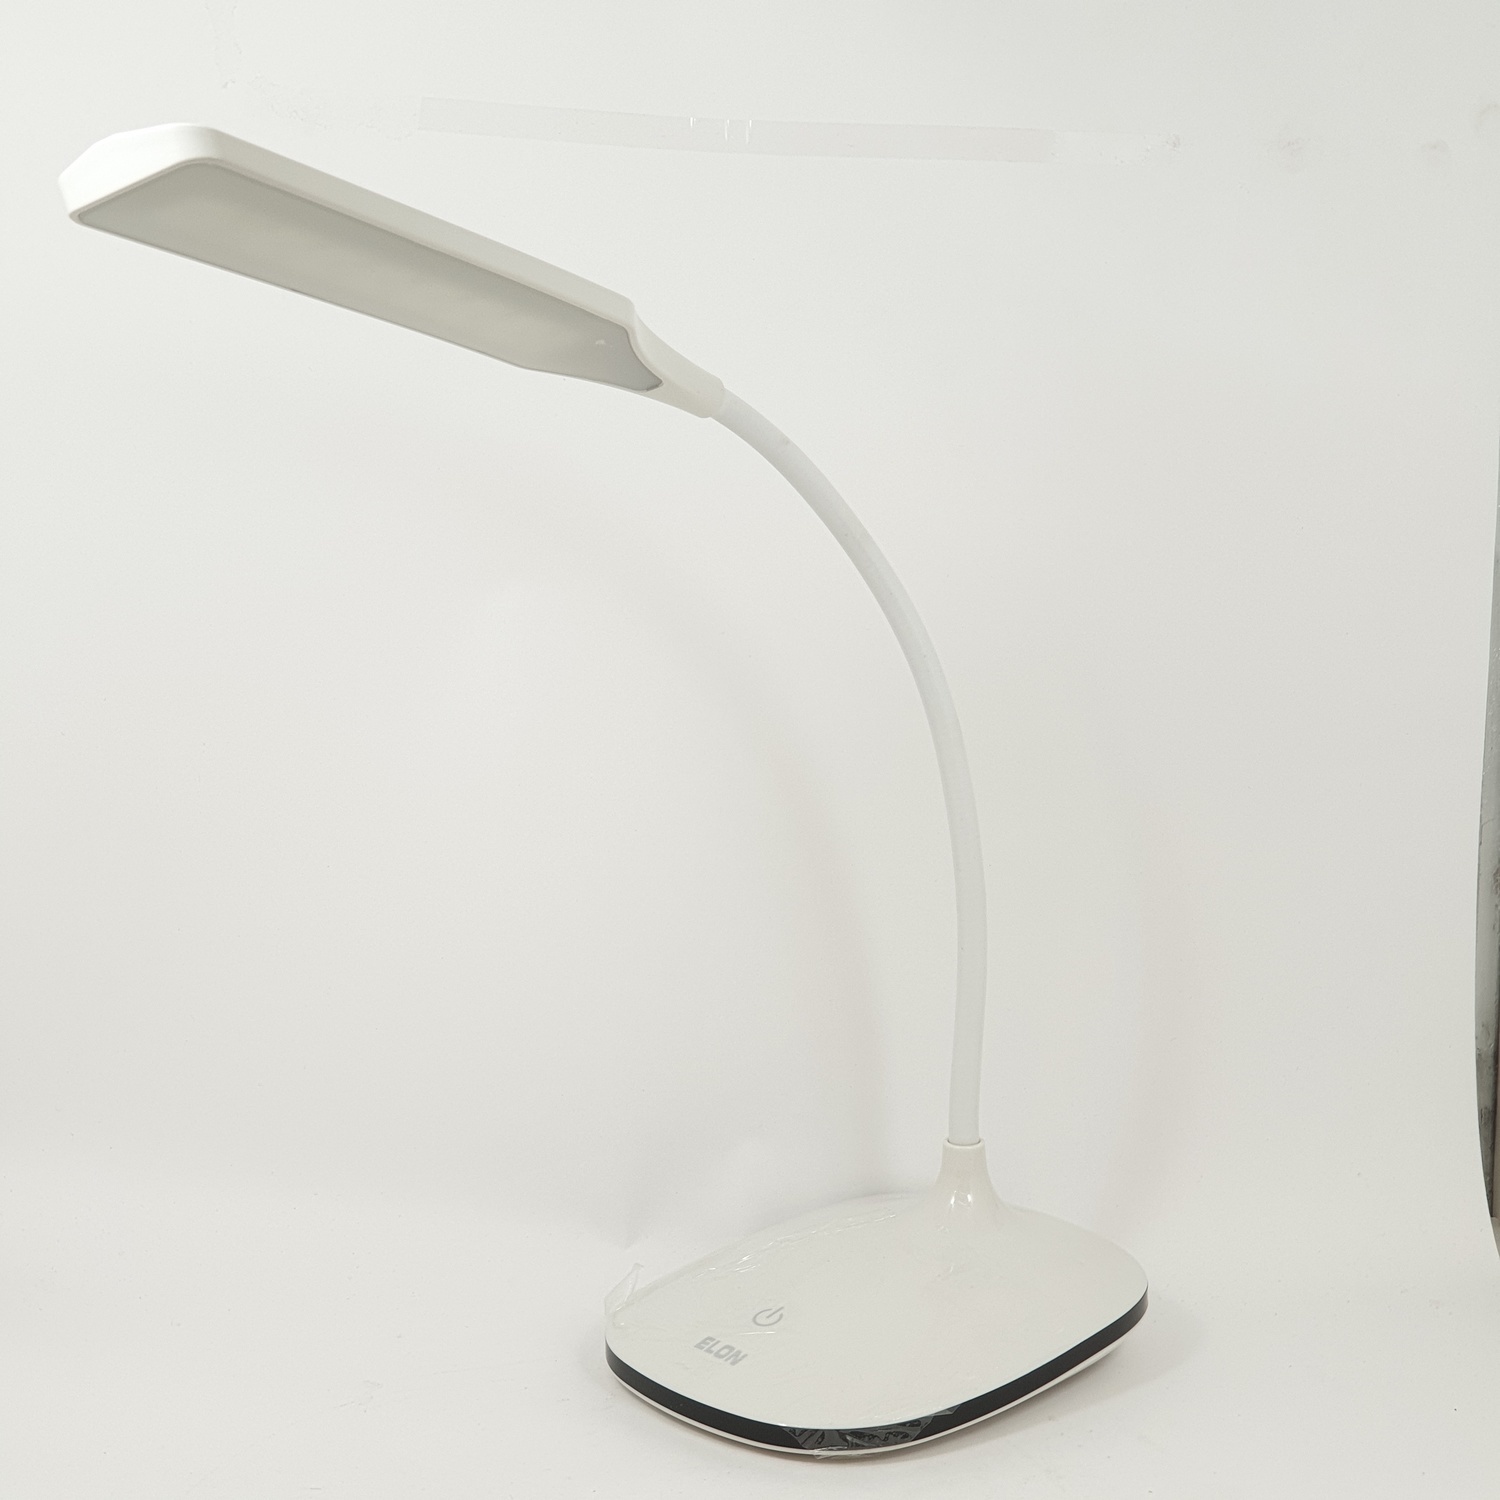 โคมไฟตั้งโต๊ะ Modern LE-1921 สีขาว ELON